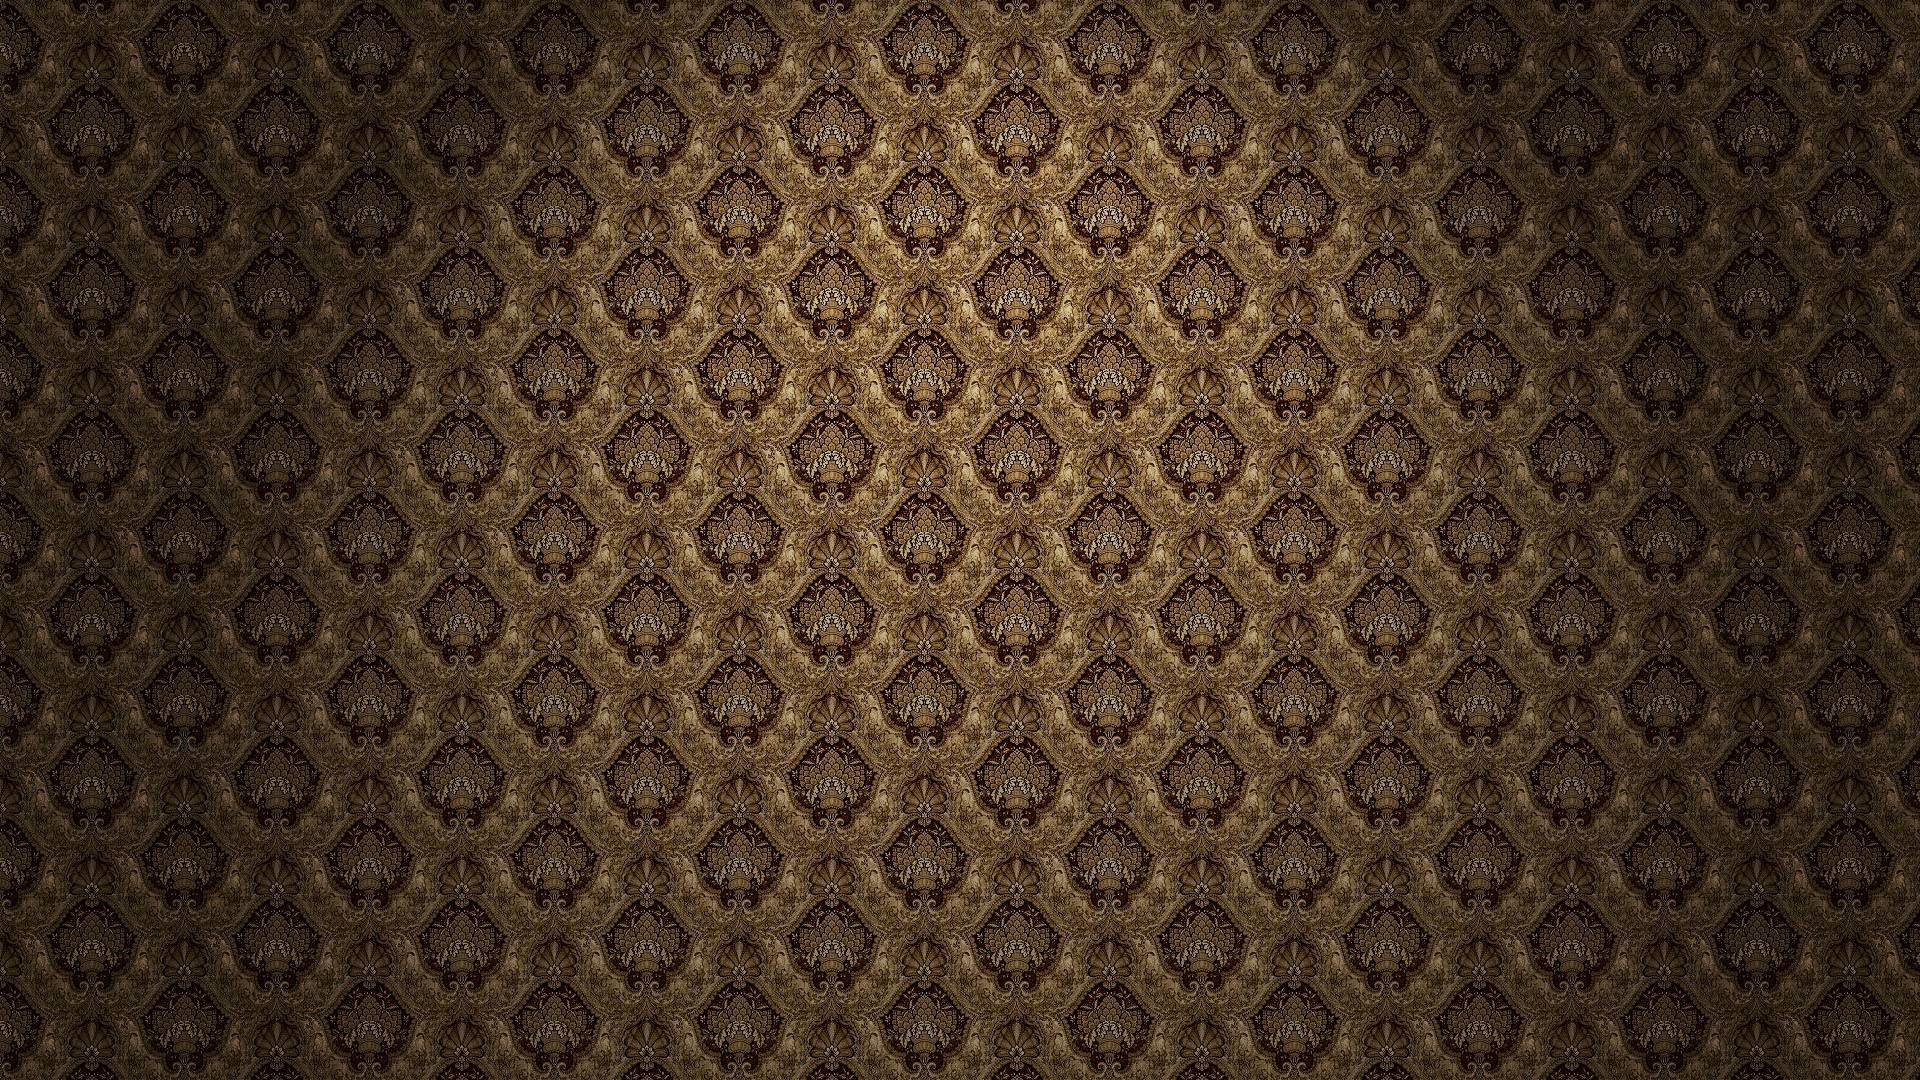 1920x1080 black and gold wallpaper – 1920Ã1080 High Definition Wallpaper .